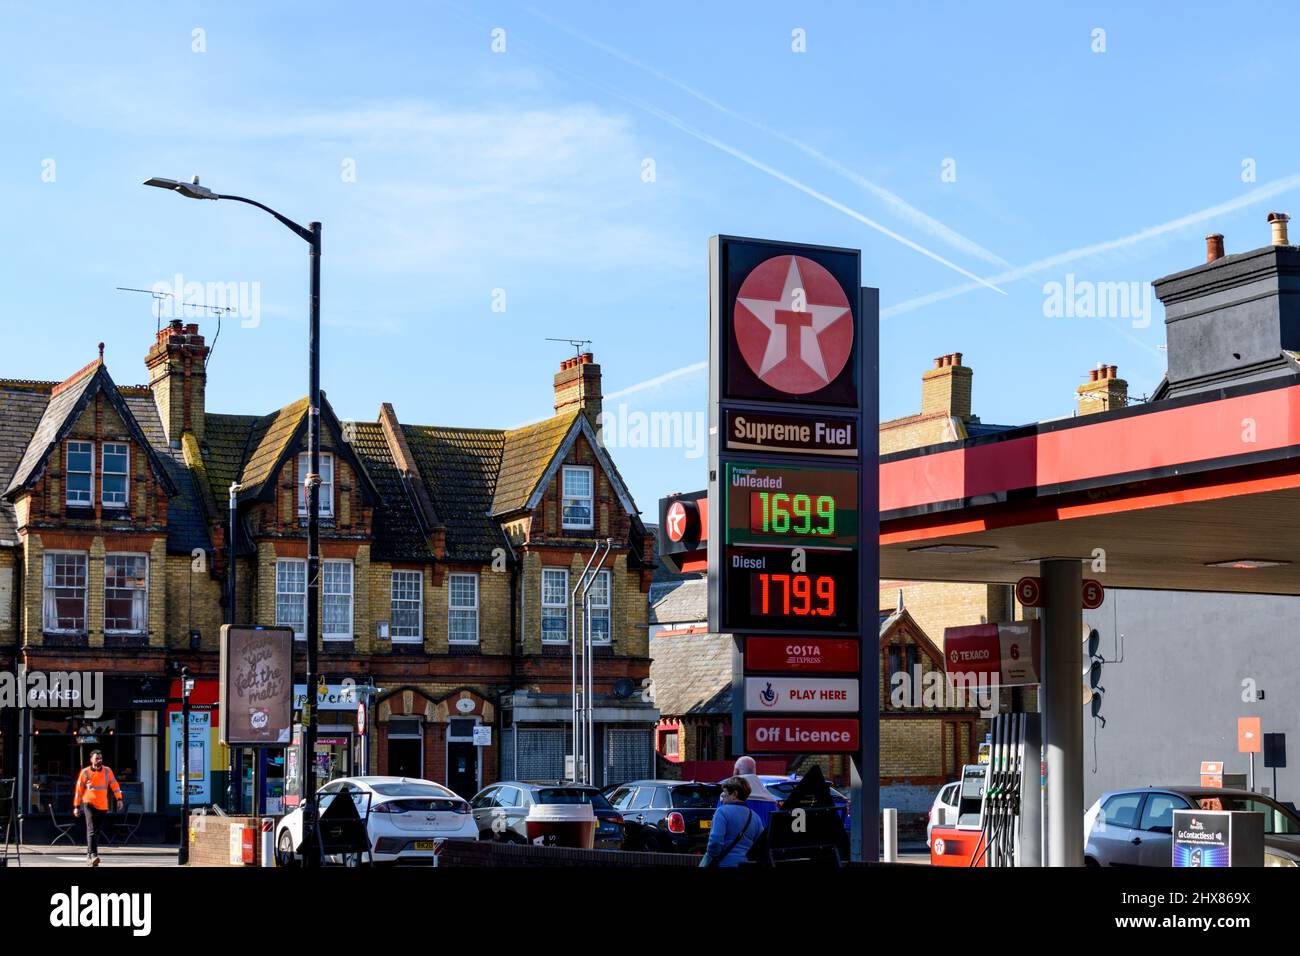 Aumento de los precios del combustible debido a la invasión rusa de Ucrania en 2022 - Herne Bay, Kent, Reino Unido Foto de stock